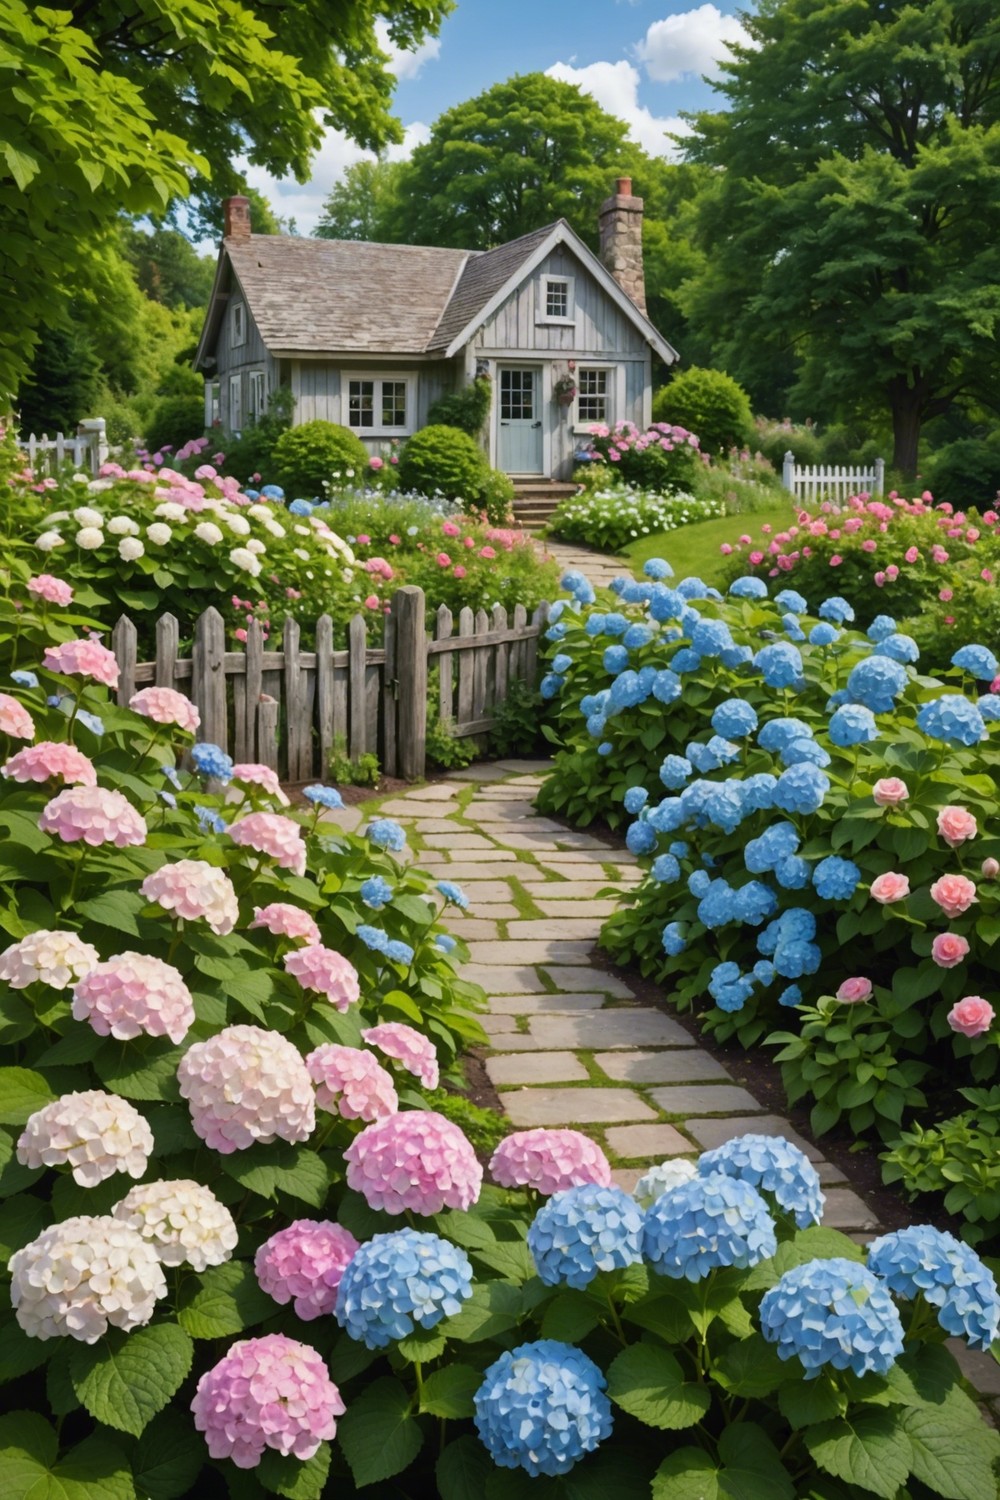 Hydrangeas in a Cottage Garden